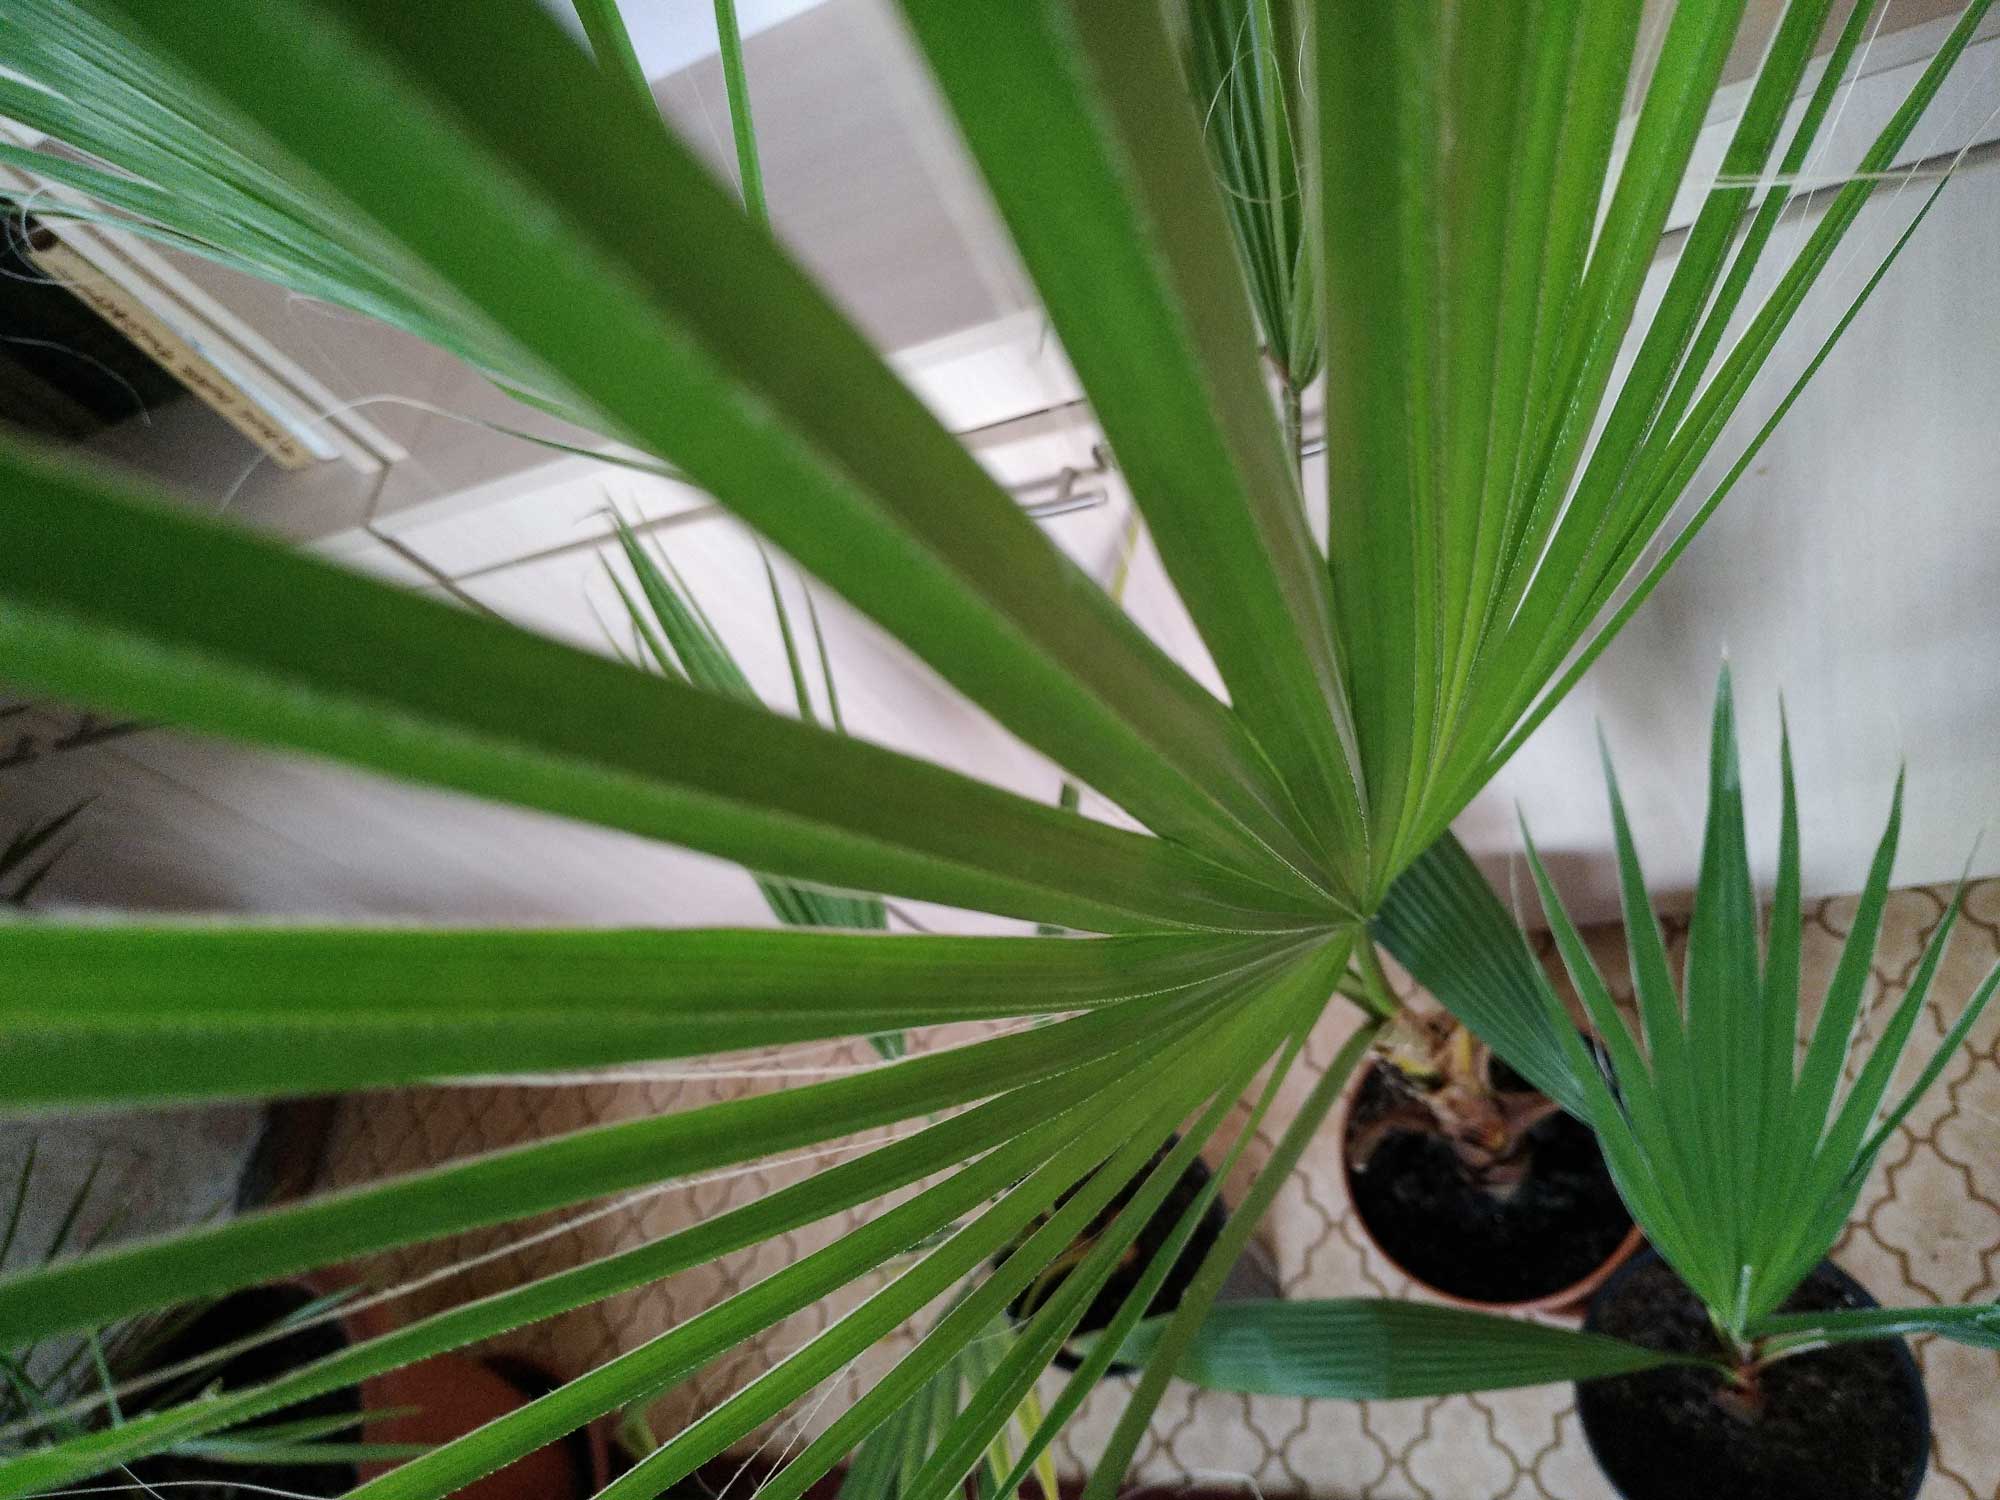 Вашингтония: выращивание пальмы из семян и уход за ней в домашних условиях, описание комнатного растения и фото сортов нитеносная (нитчатая), робуста